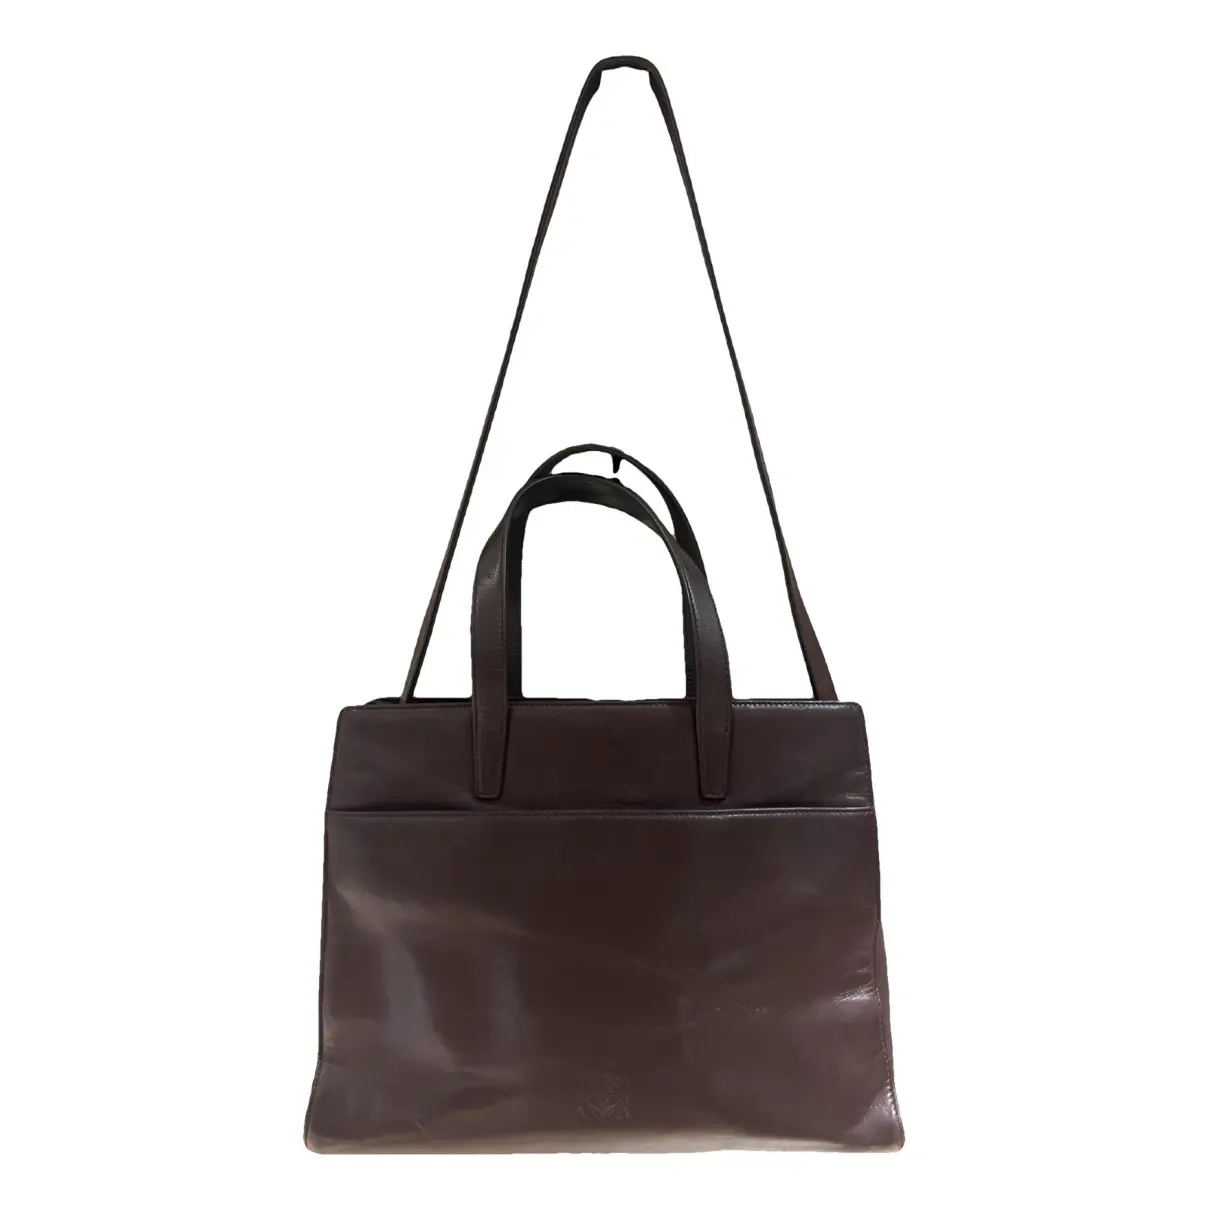 Anagram leather handbag Loewe